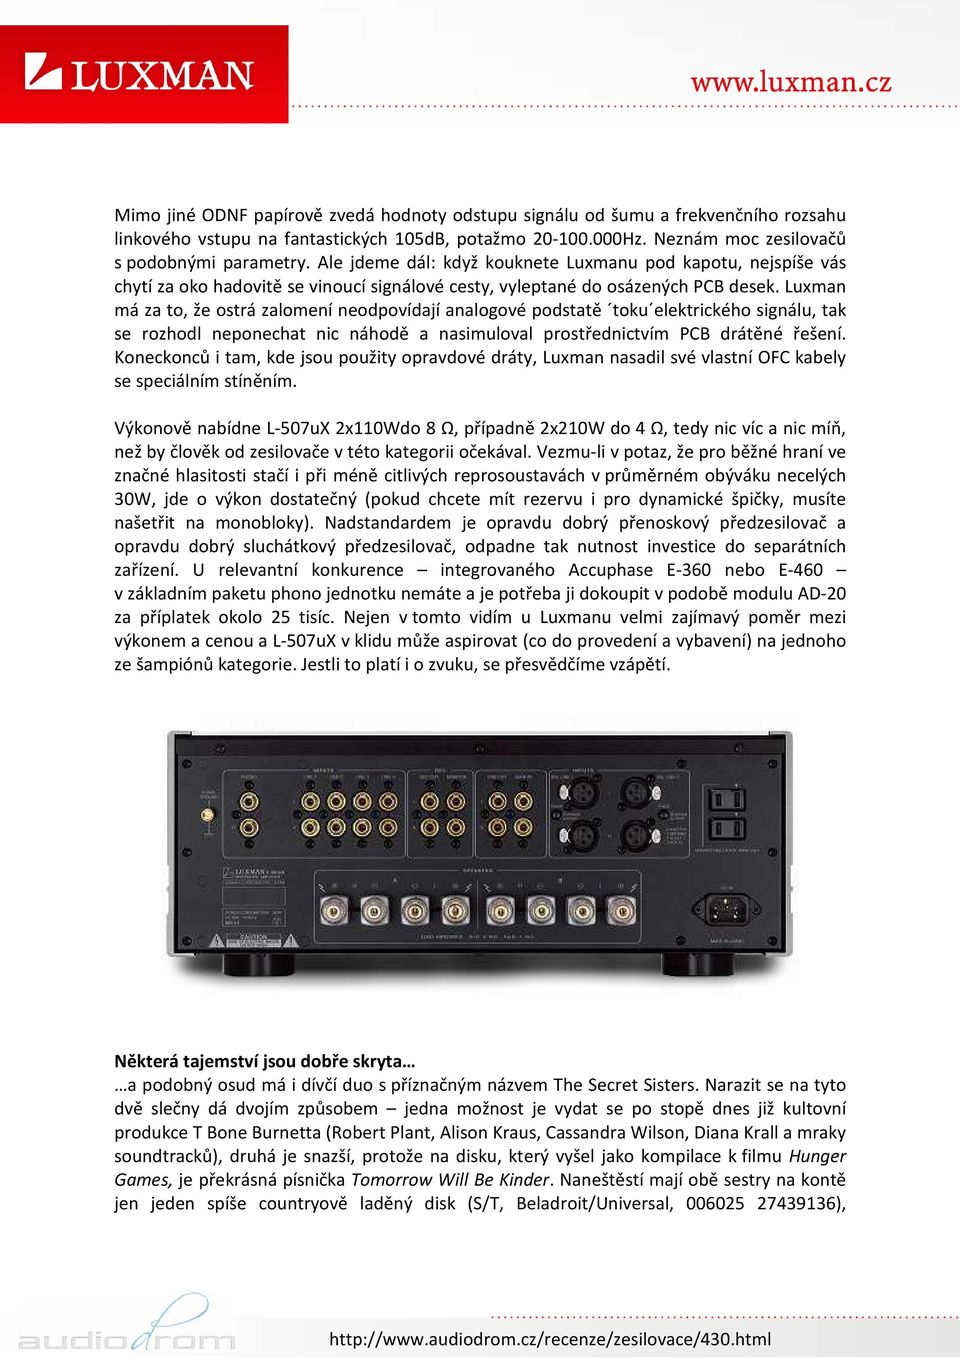 Luxman má za to, že ostrá zalomení neodpovídají analogové podstatě toku elektrického signálu, tak se rozhodl neponechat nic náhodě a nasimuloval prostřednictvím PCB drátěné řešení.